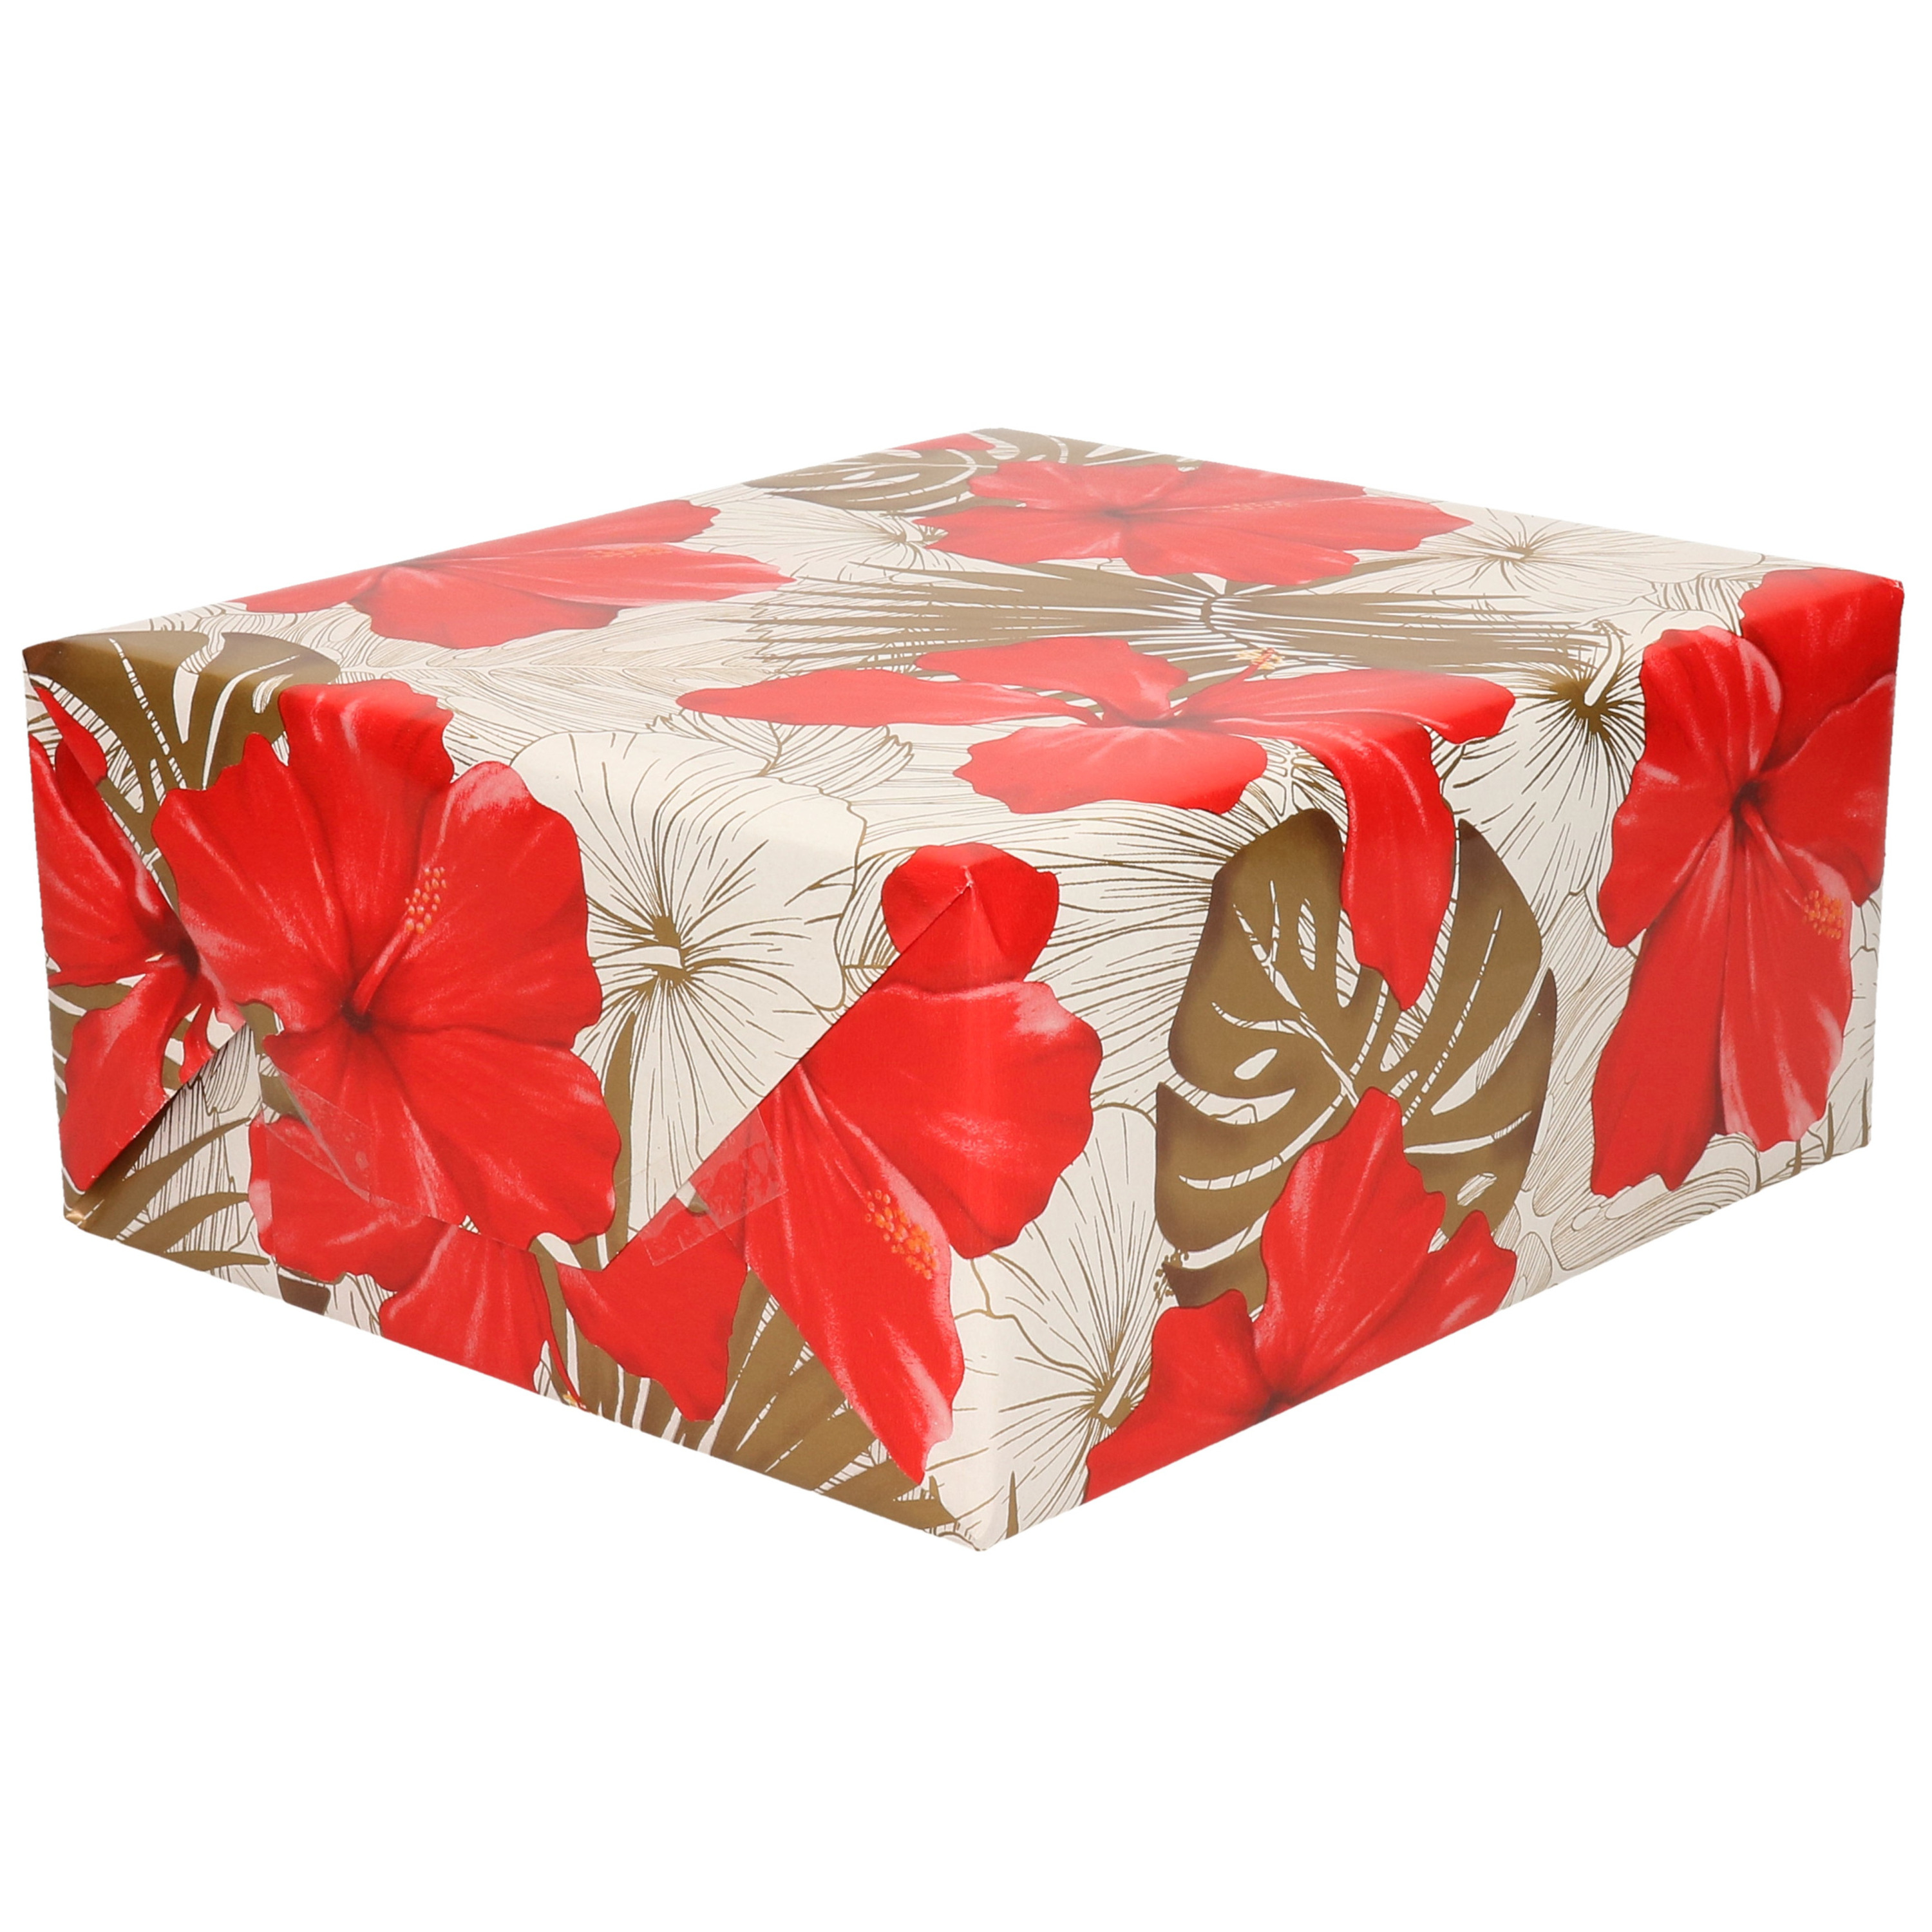 1x Rollen Inpakpapier/cadeaupapier creme met bloemen rood en goud 200 x 70 cm